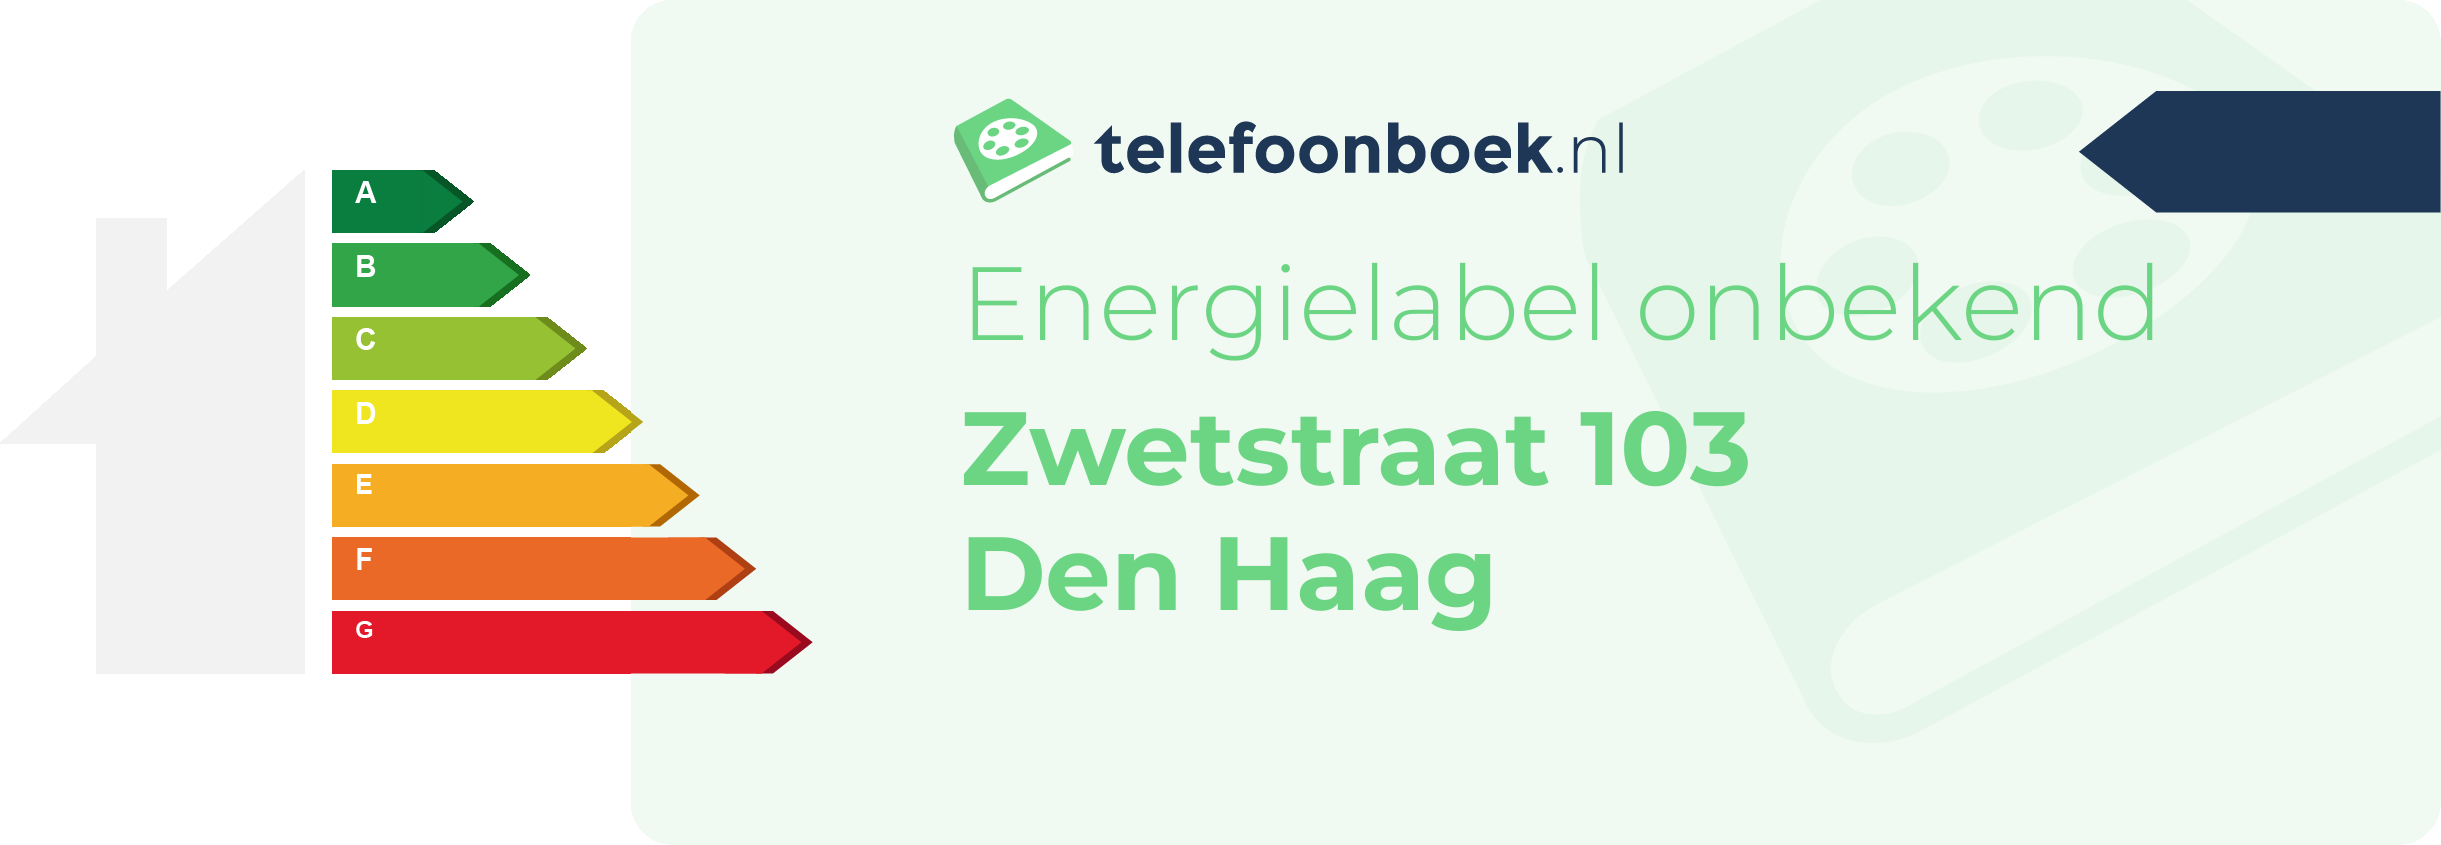 Energielabel Zwetstraat 103 Den Haag